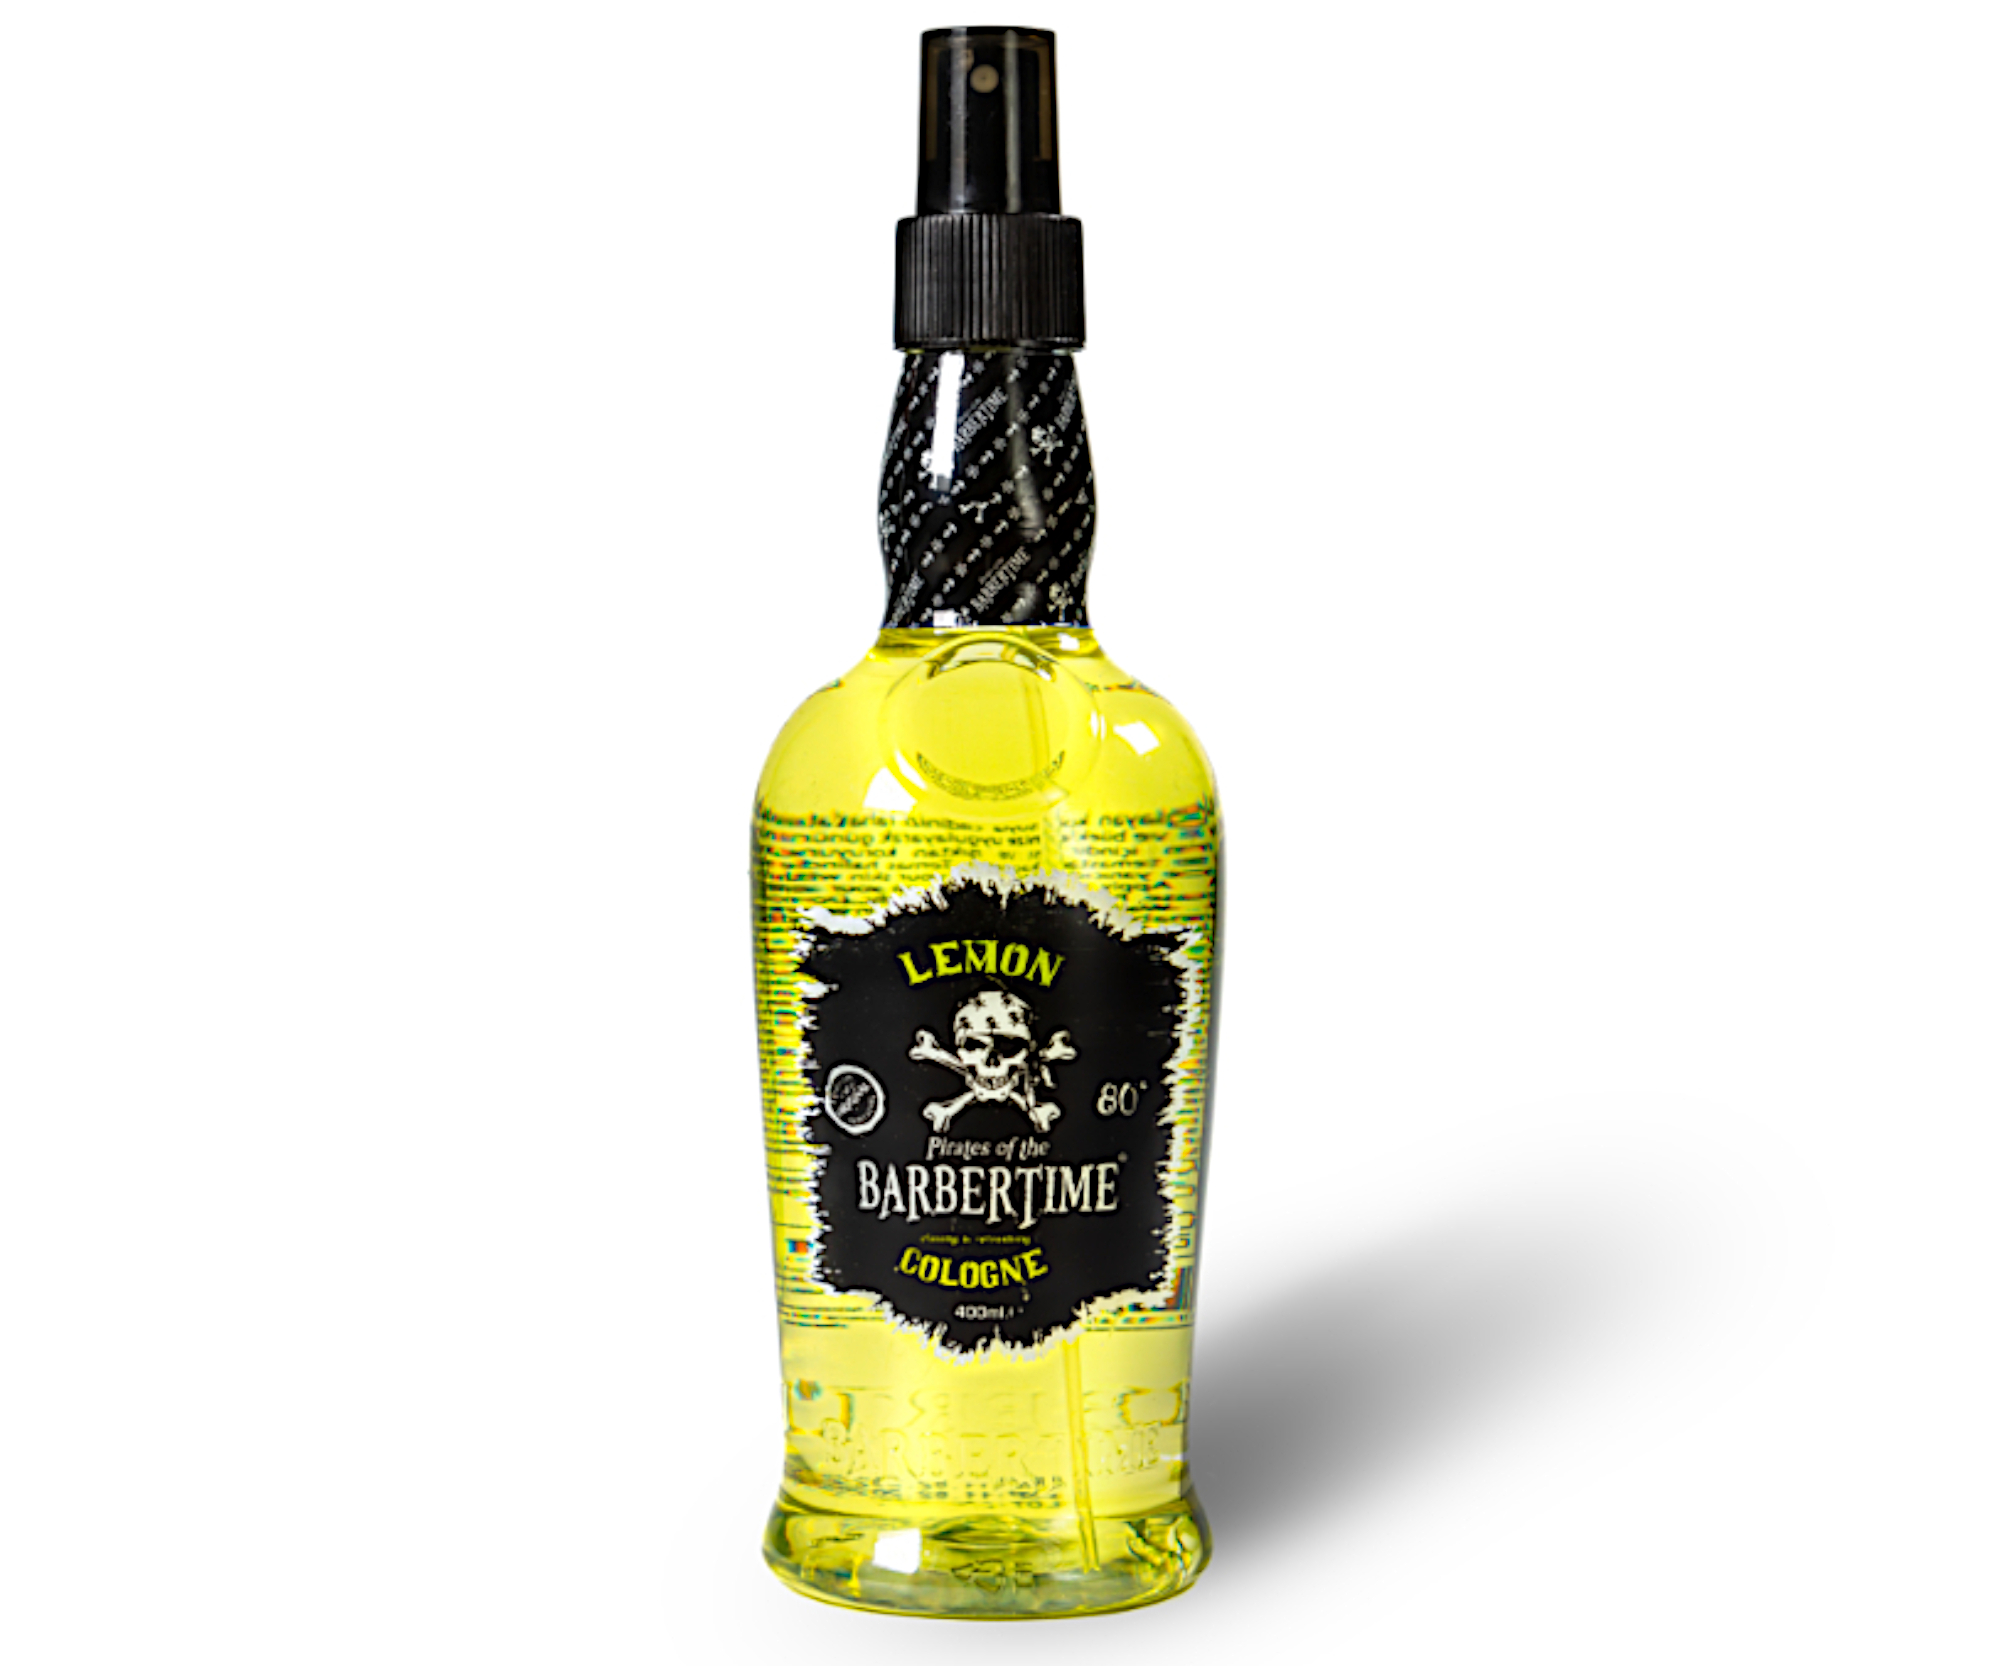 Osvěžující kolínská voda po holení Barbertime Lemon Cologne - 400 ml - Pirates of the Barbertime + dárek zdarma